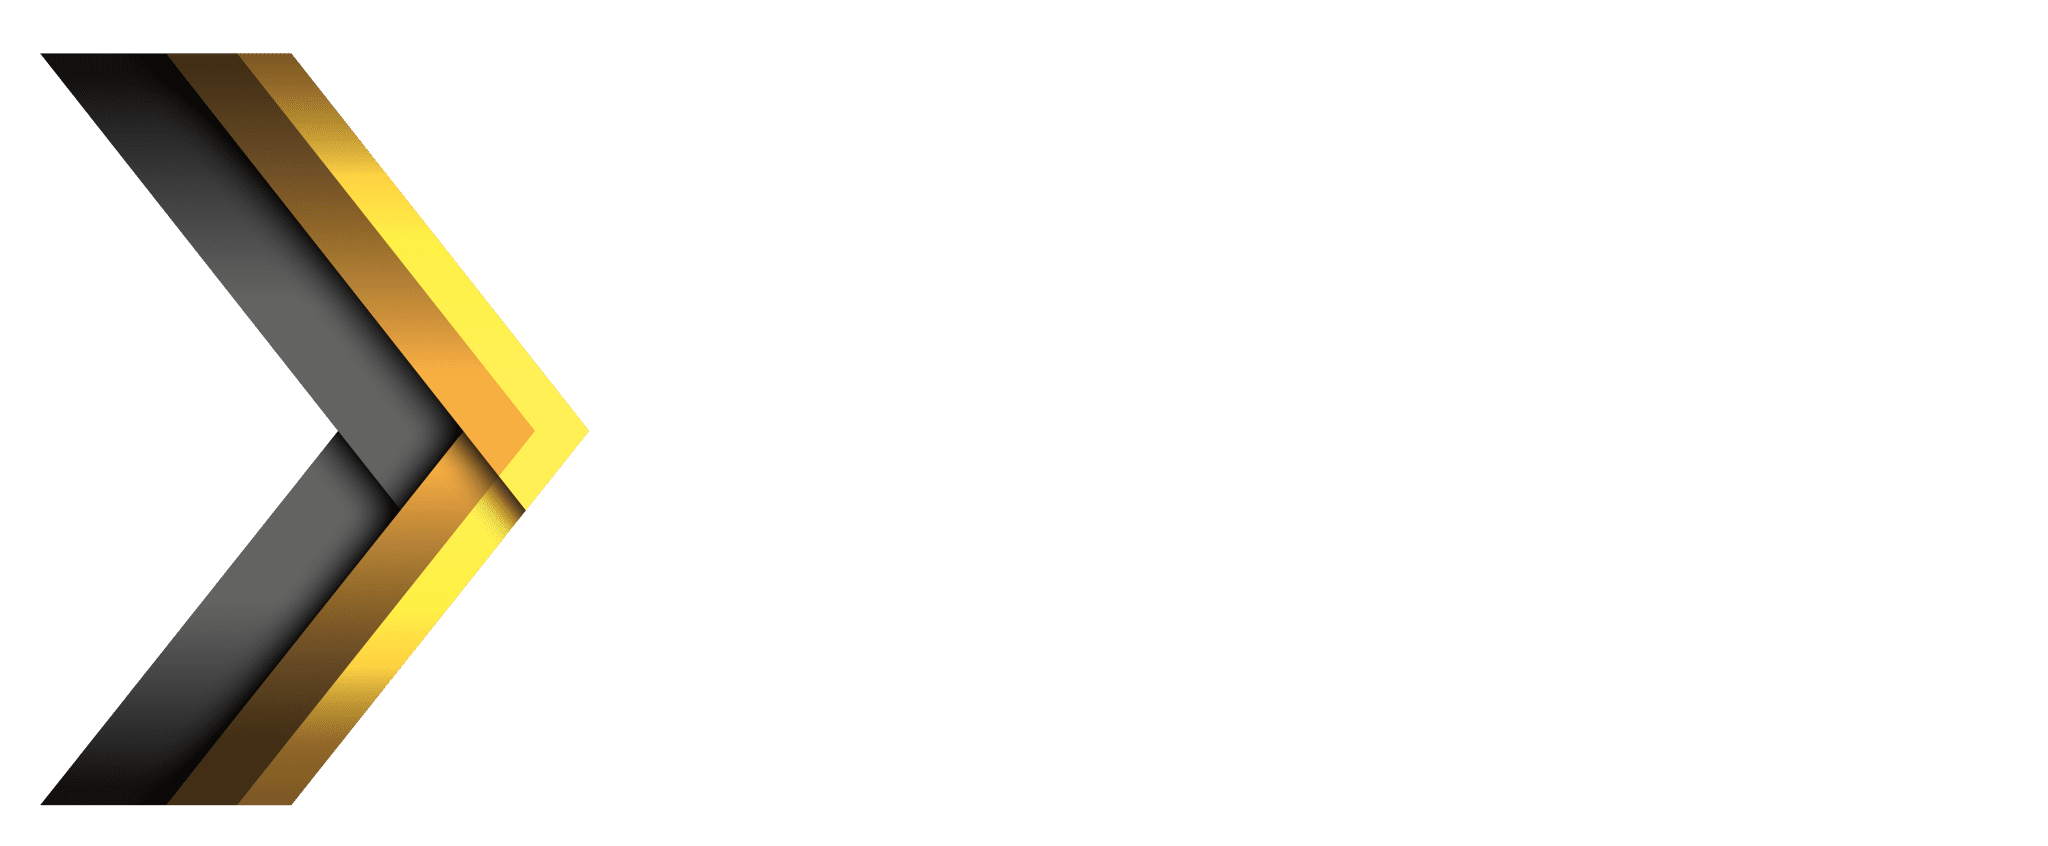 full service graphic design studio